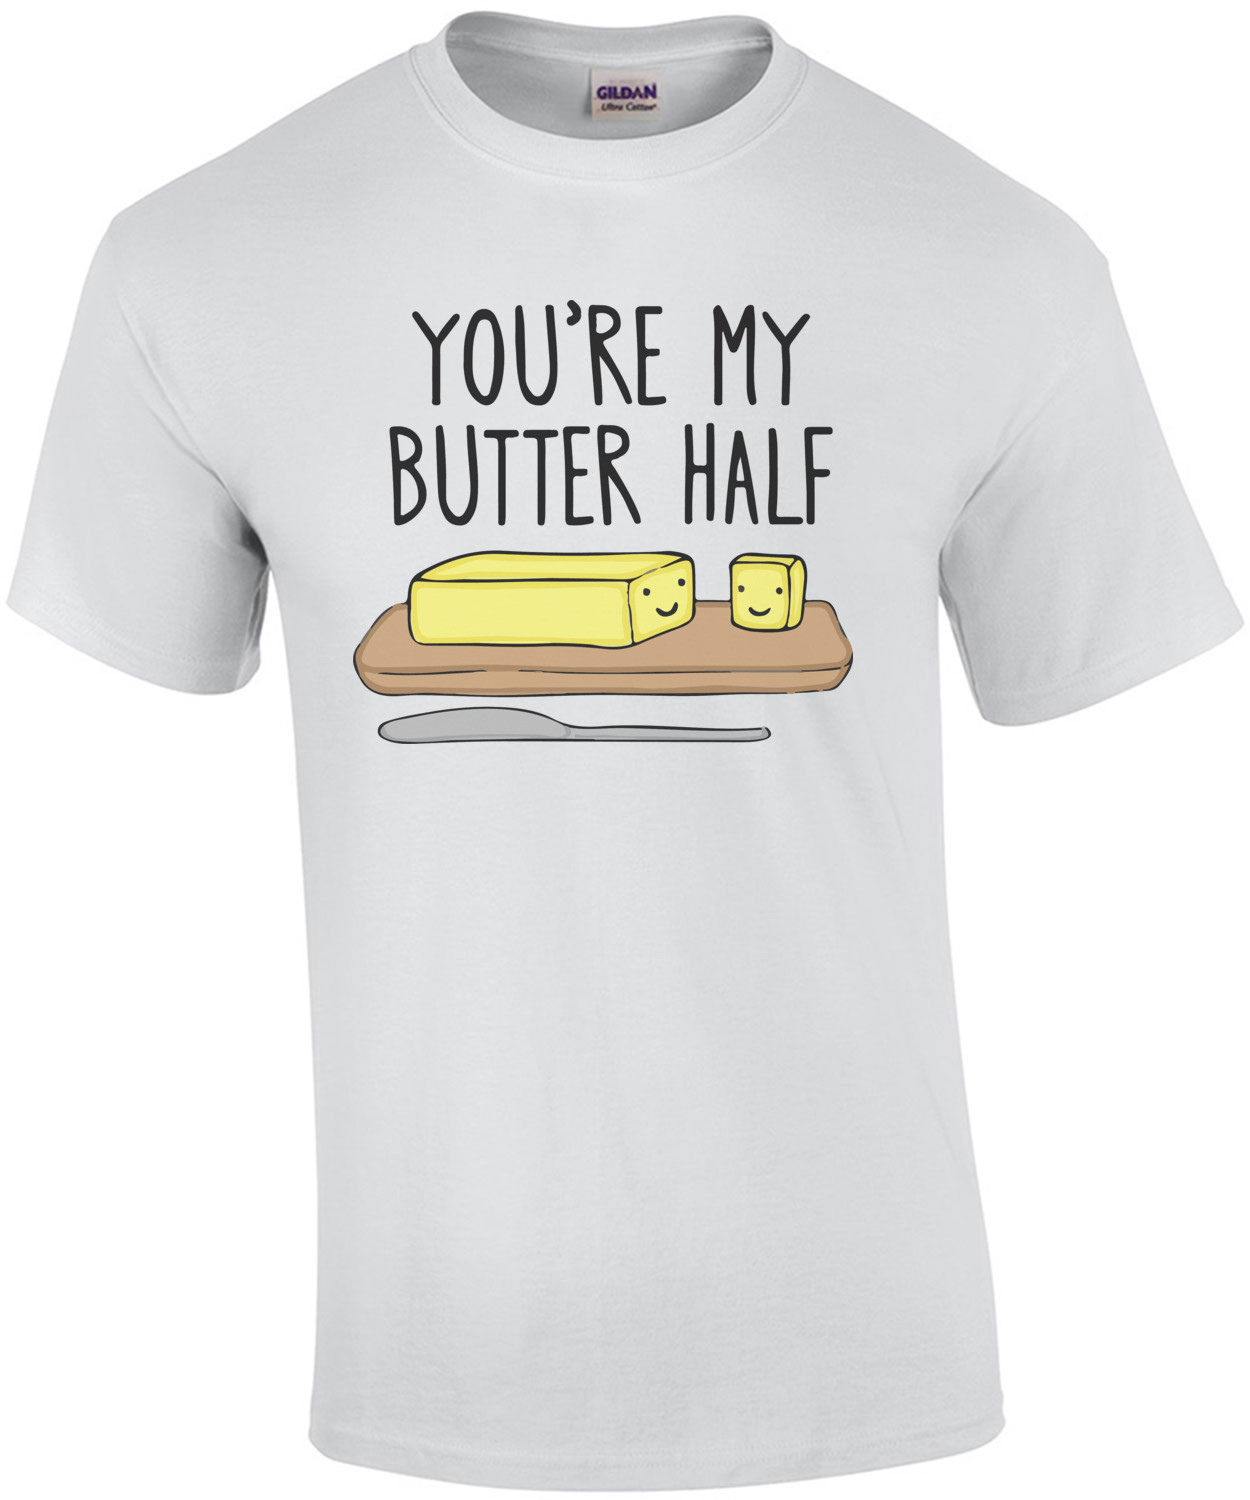 You're my butter half pun t-shirt